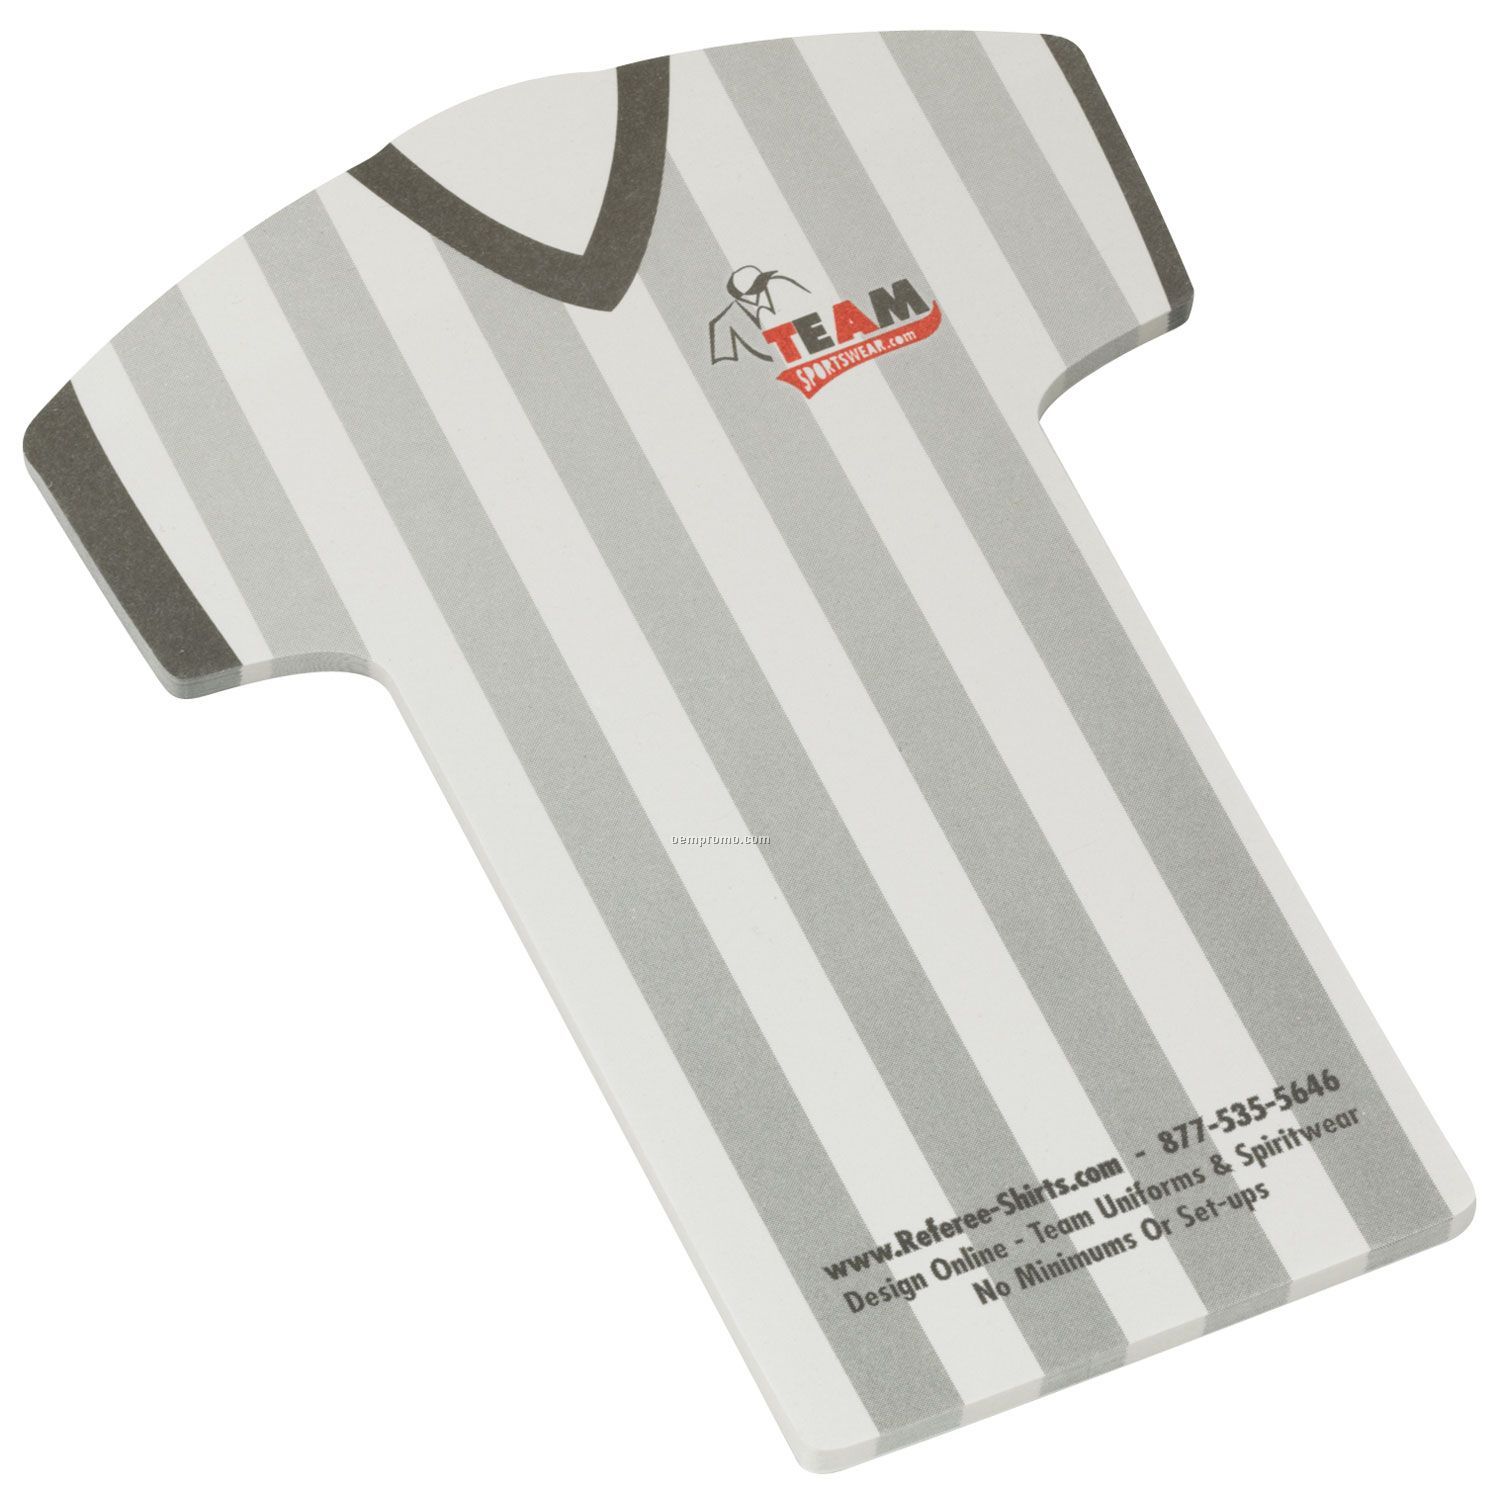 Earth Friendly Adhesive Notes/T-shirt - 100 Sheets